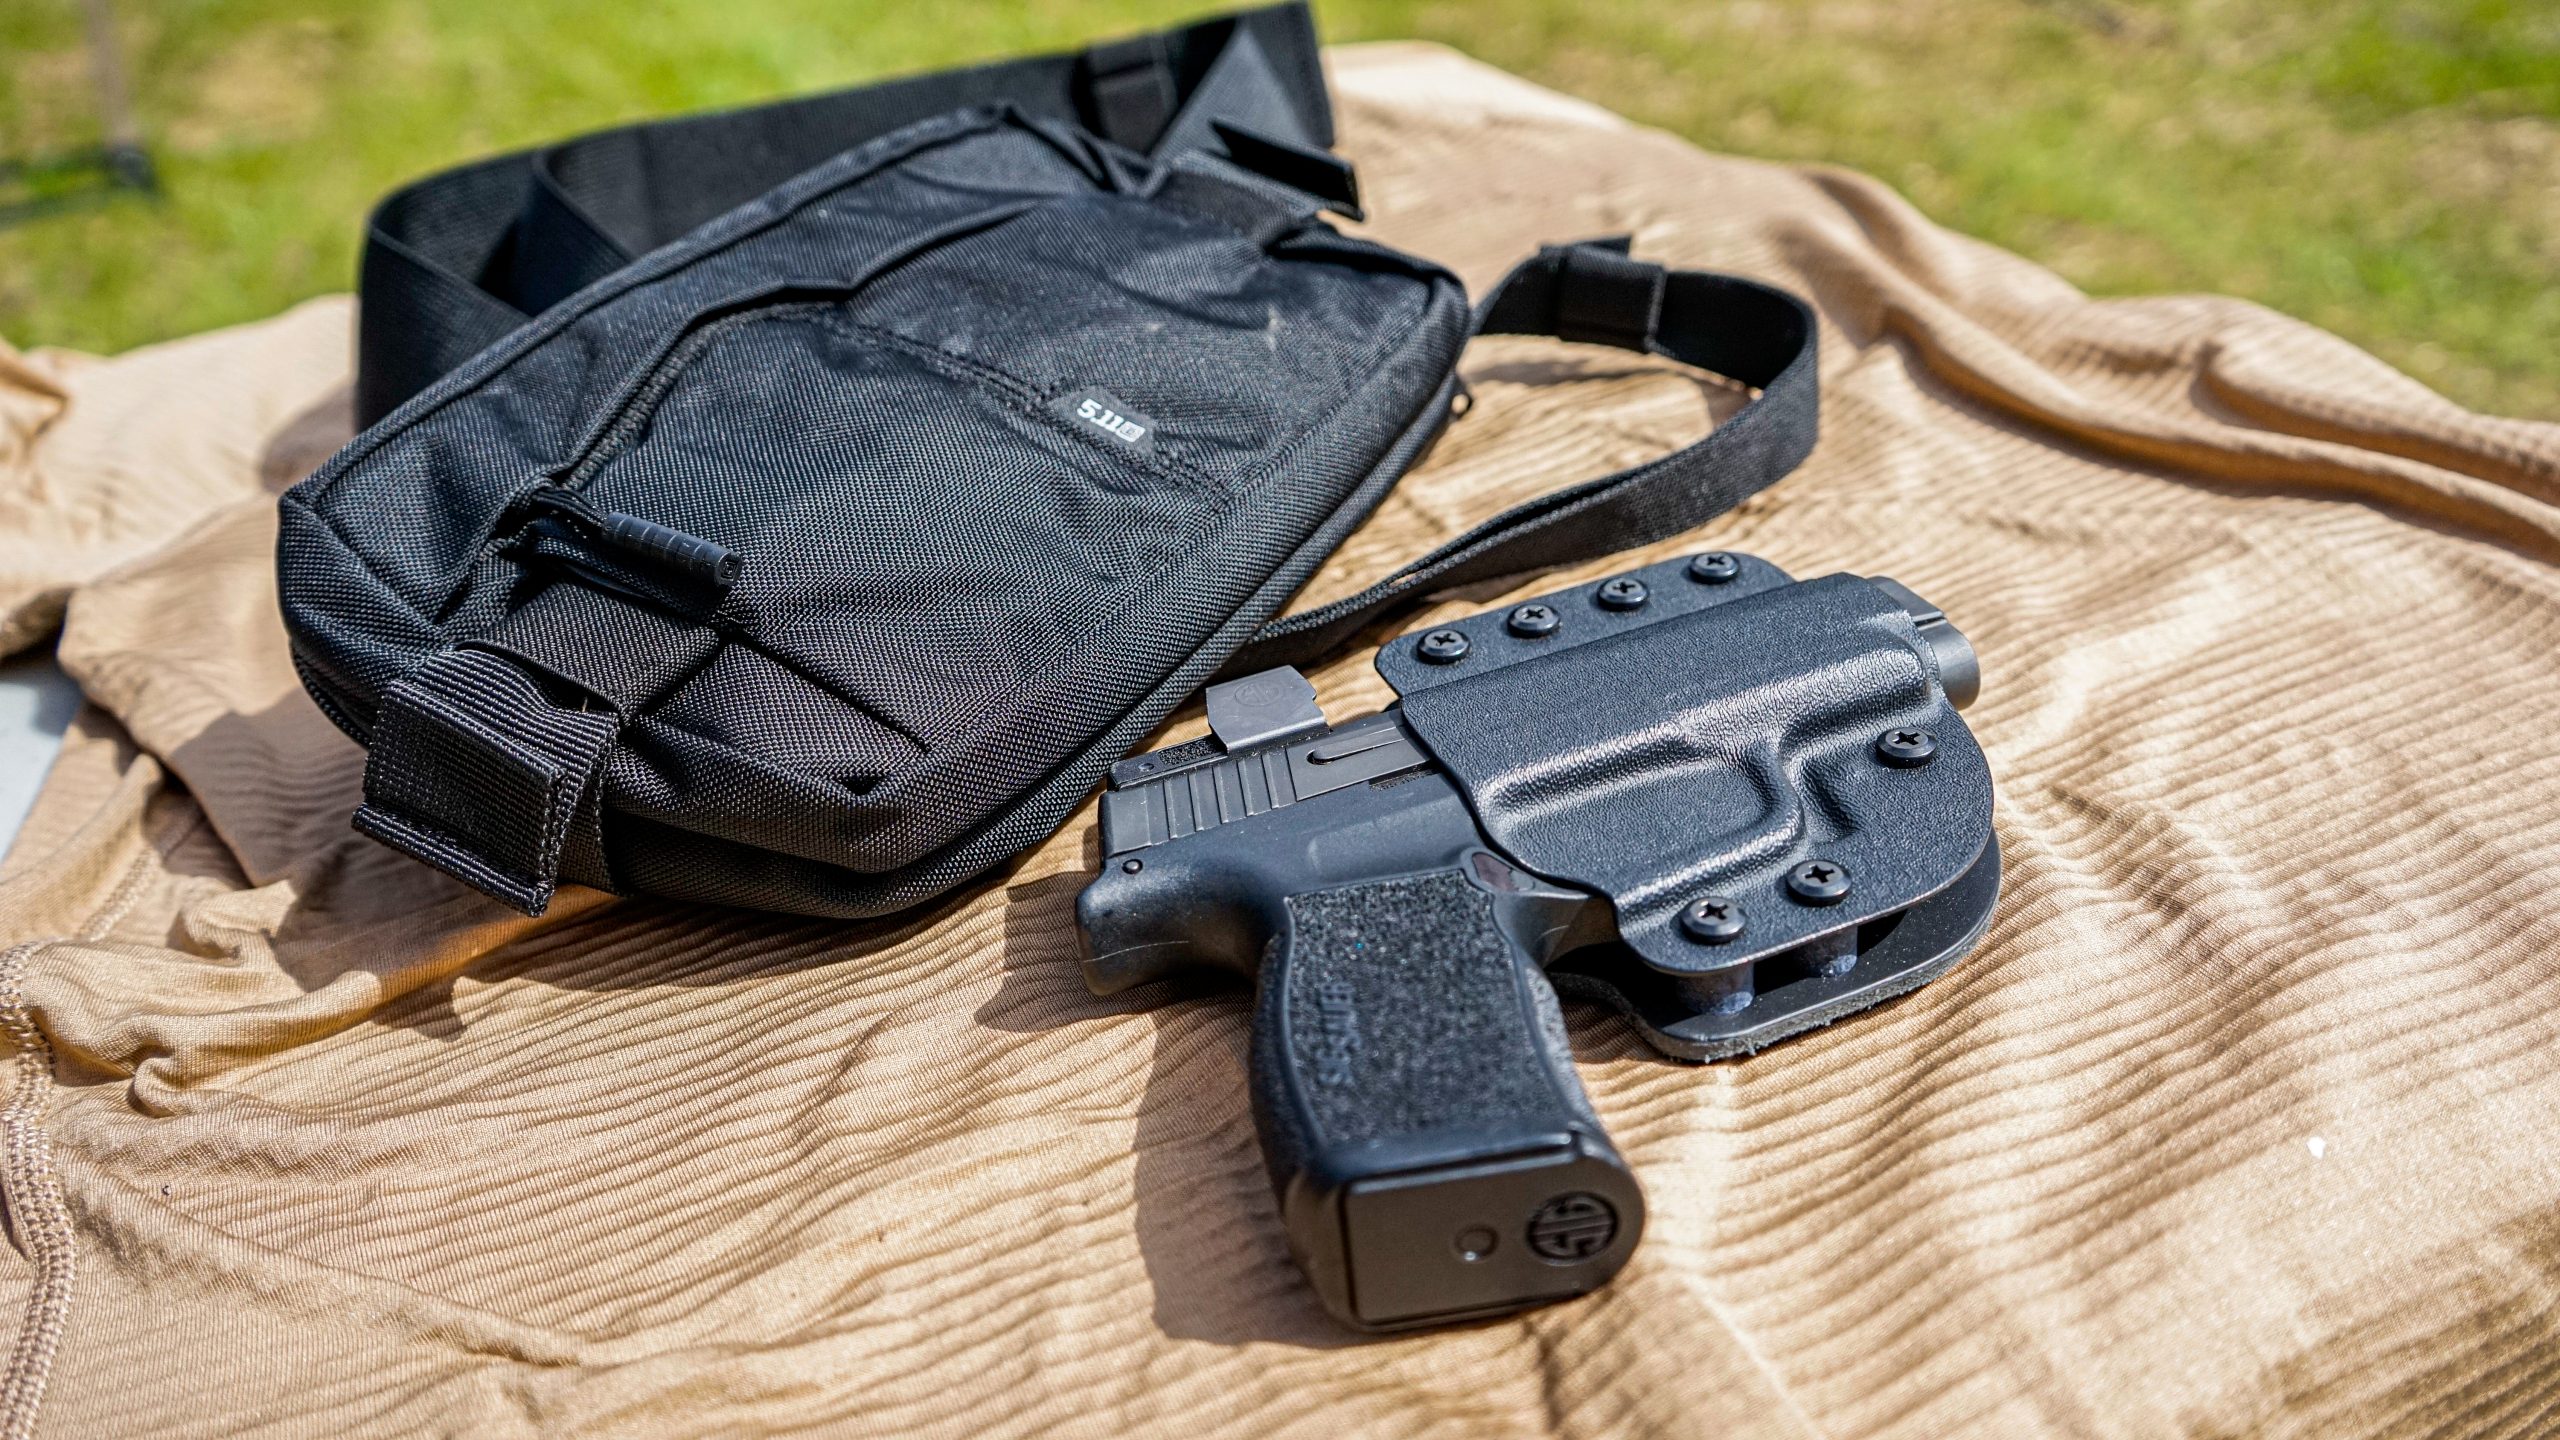 Vertx VELCRO® Pistol Holster for Backpacks - Use With Glock 19